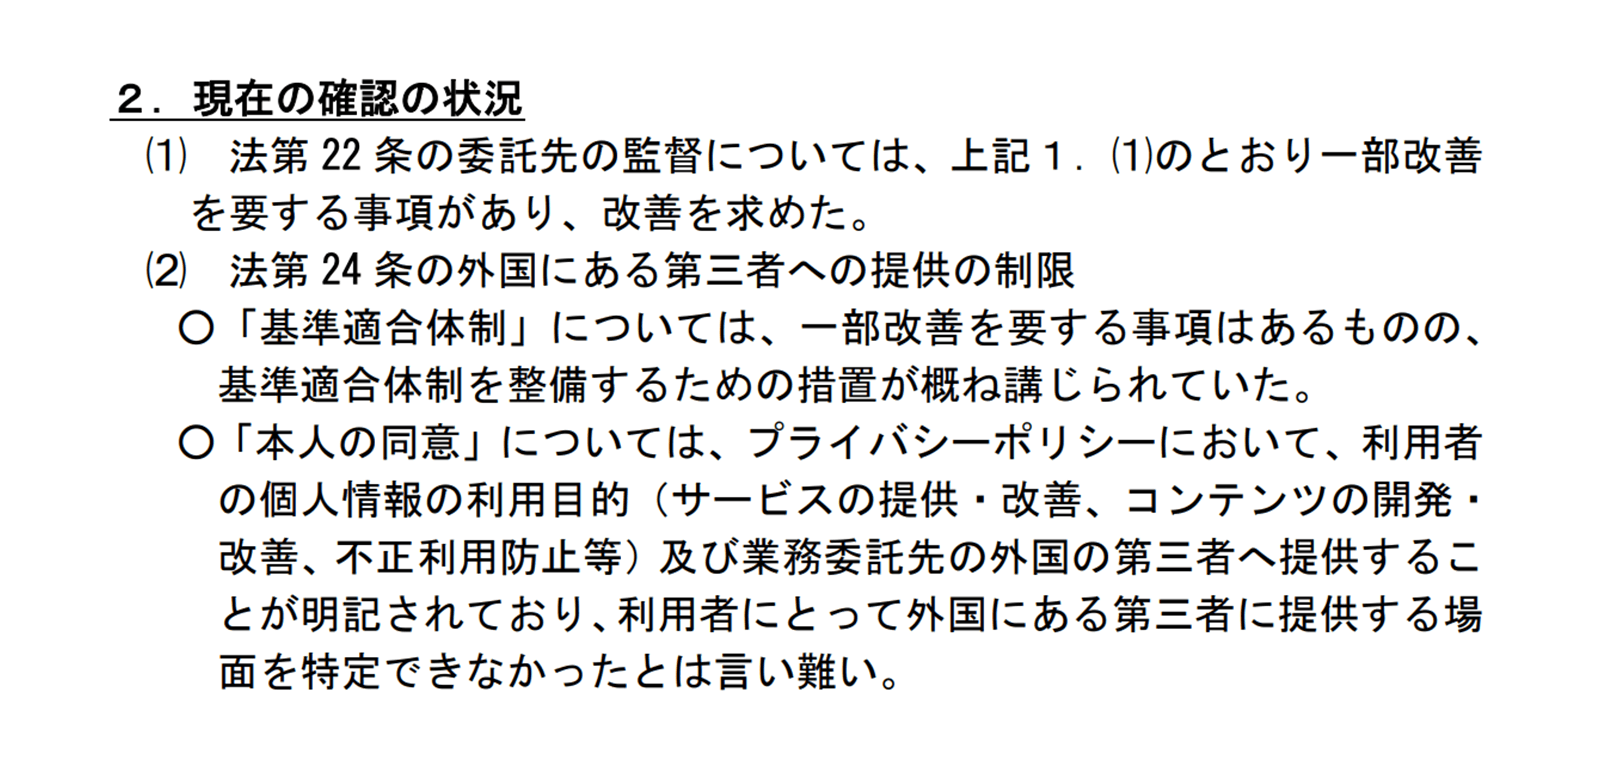 https://www.ppc.go.jp/files/pdf/210423_houdou.pdf 2021年4月26日最終アクセス